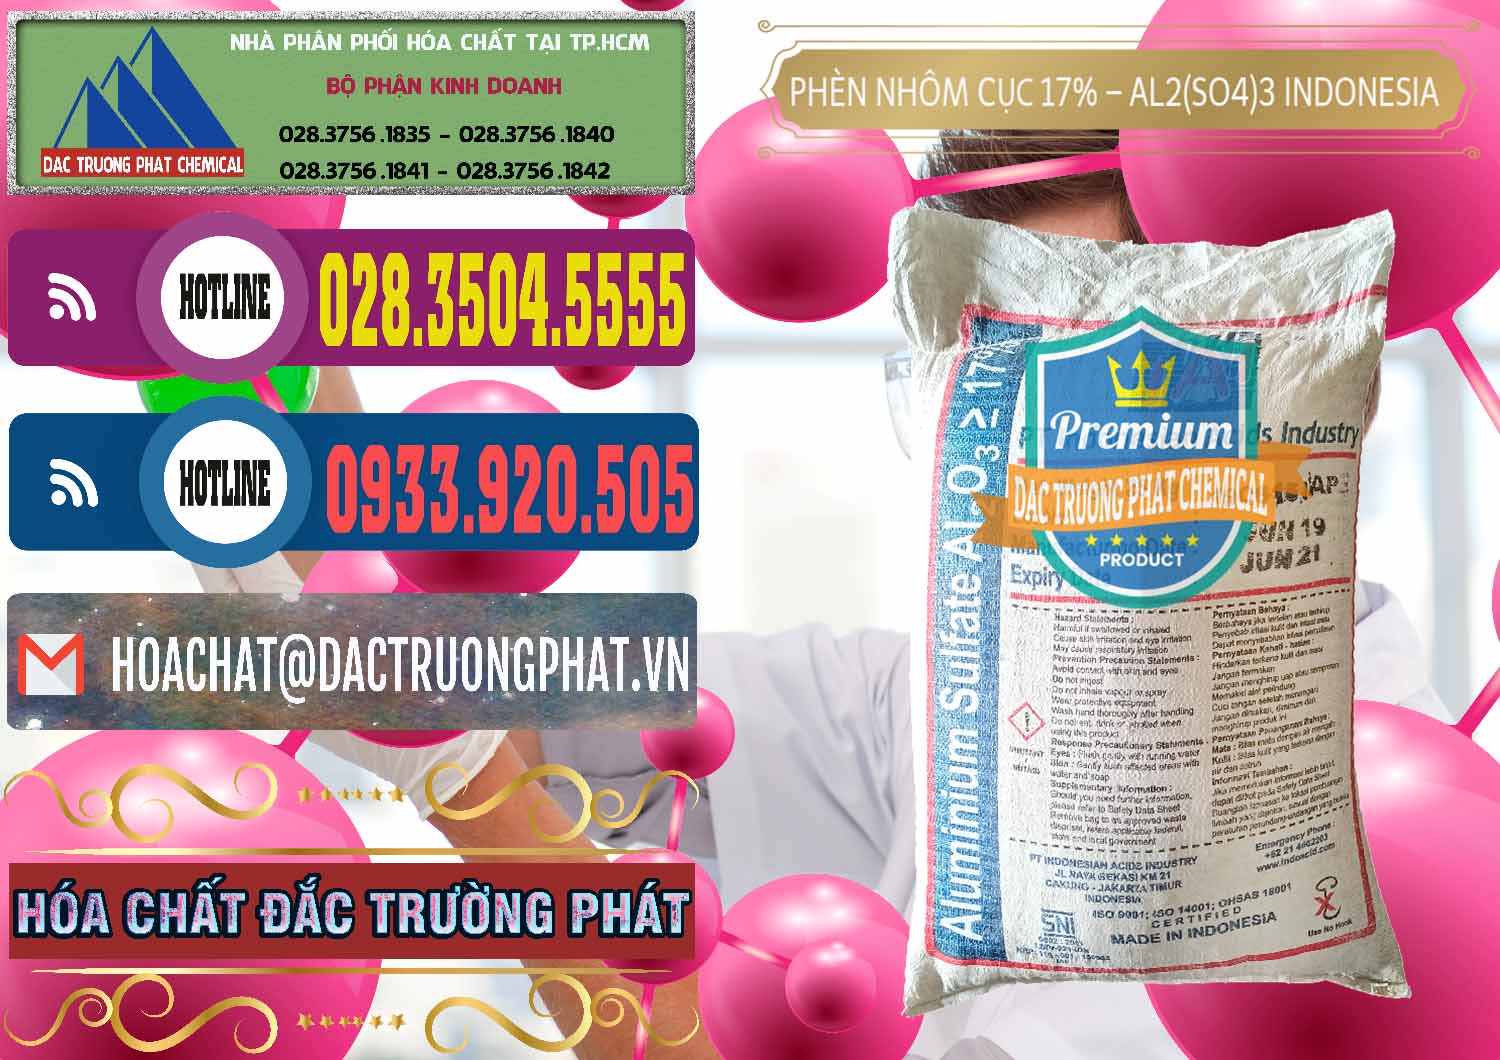 Nơi cung ứng _ bán Phèn Nhôm Cục - Al2(SO4)3 17% bao 25kg Indonesia - 0115 - Công ty chuyên phân phối ( nhập khẩu ) hóa chất tại TP.HCM - muabanhoachat.com.vn